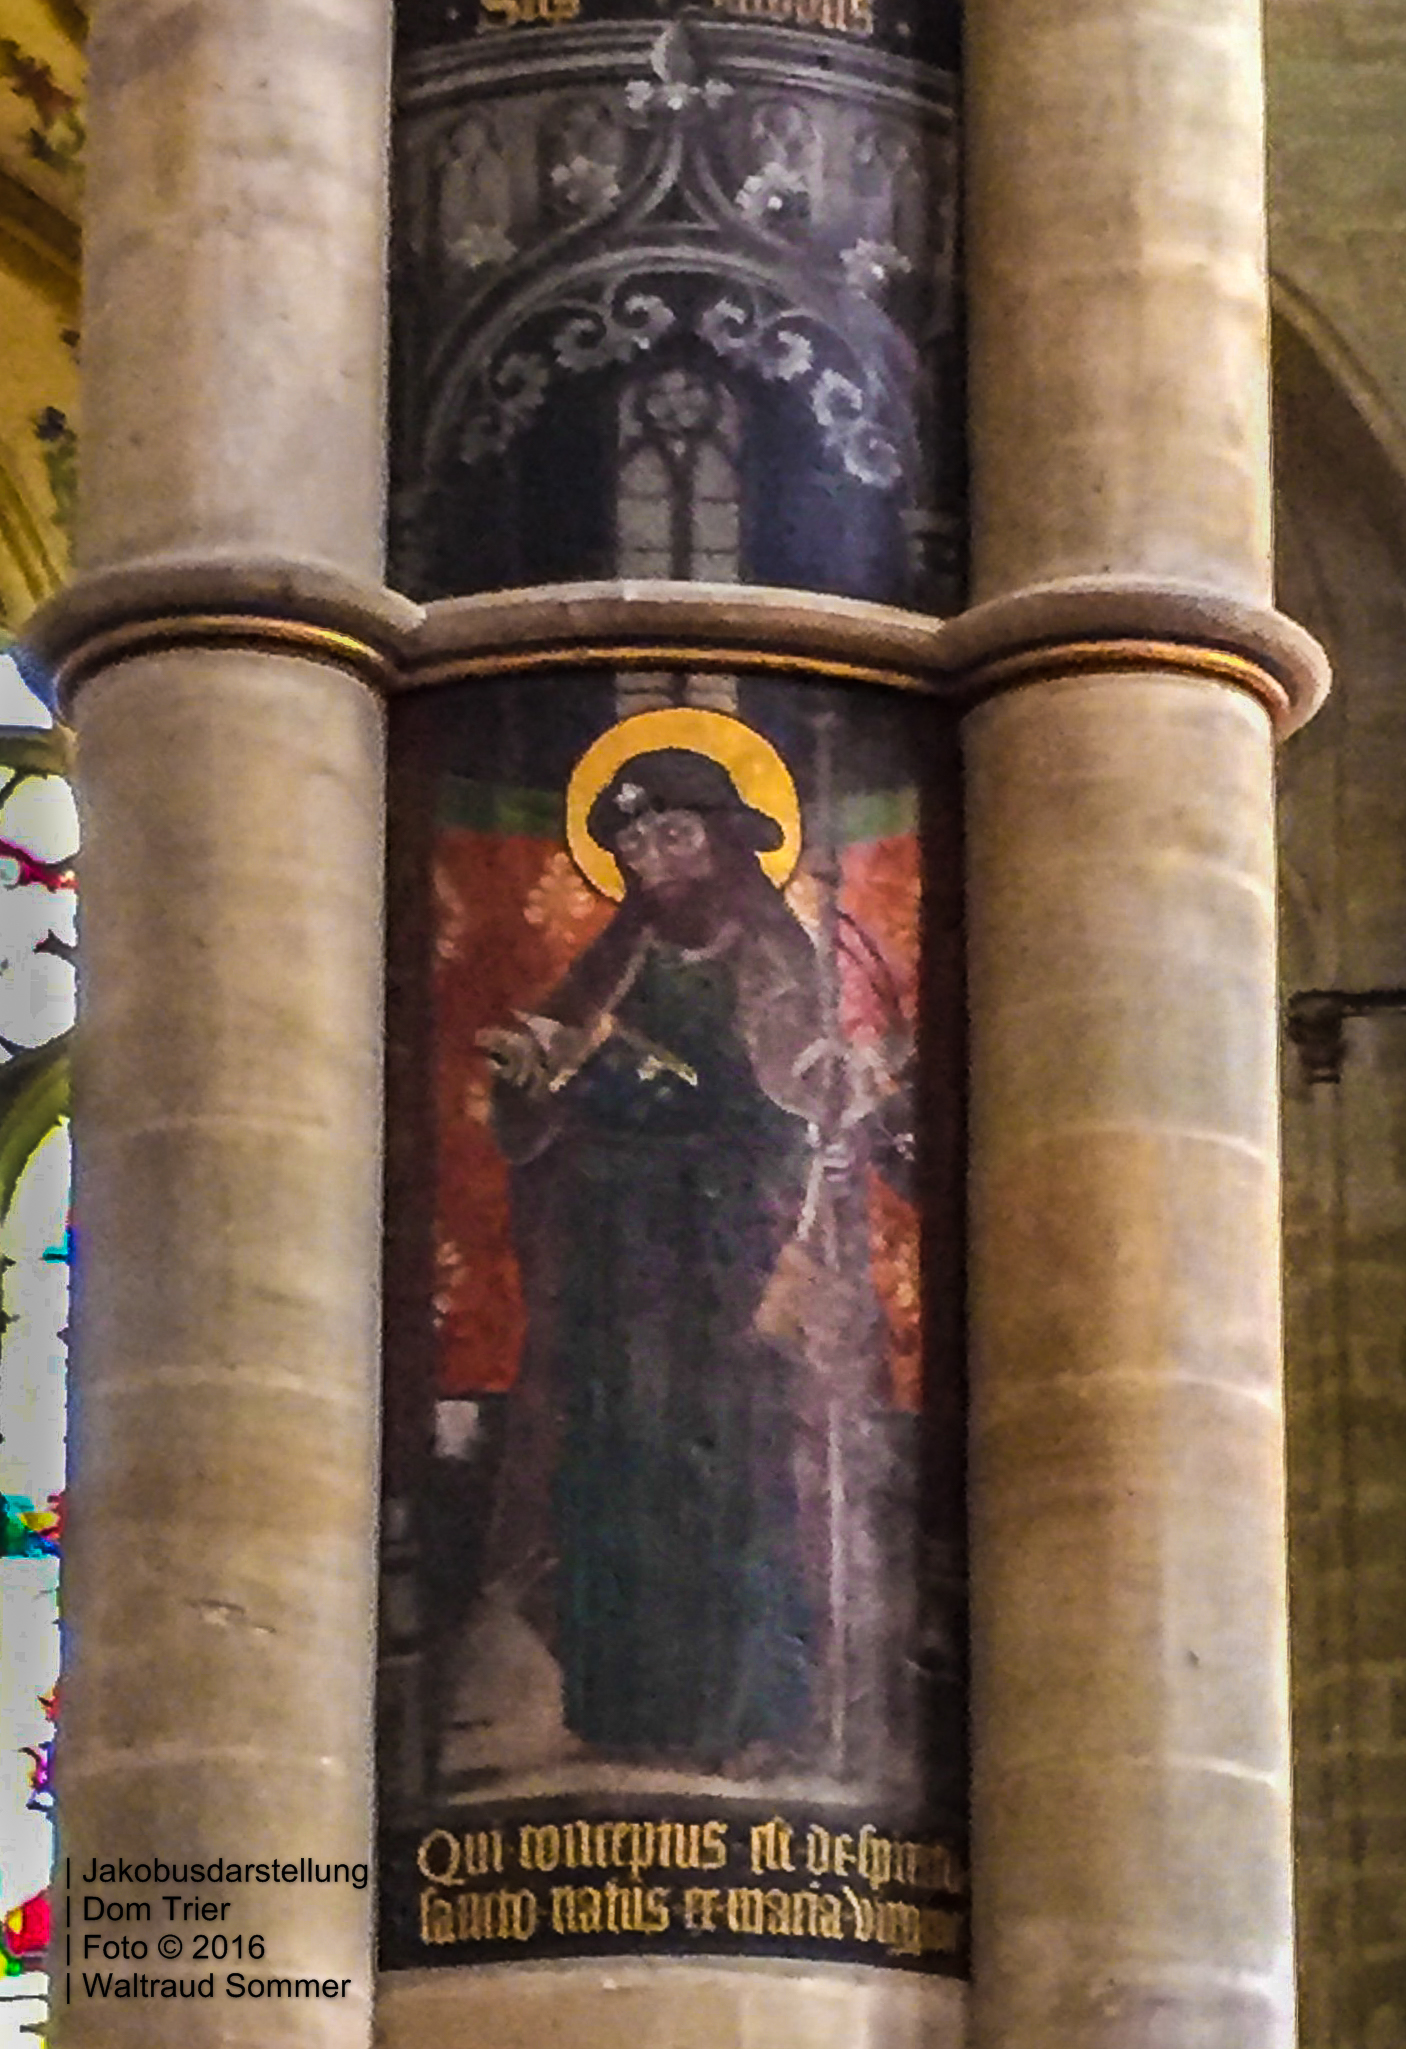 Bild 02 Jakobusdarstellung, Liebfrauenkirche, Trier